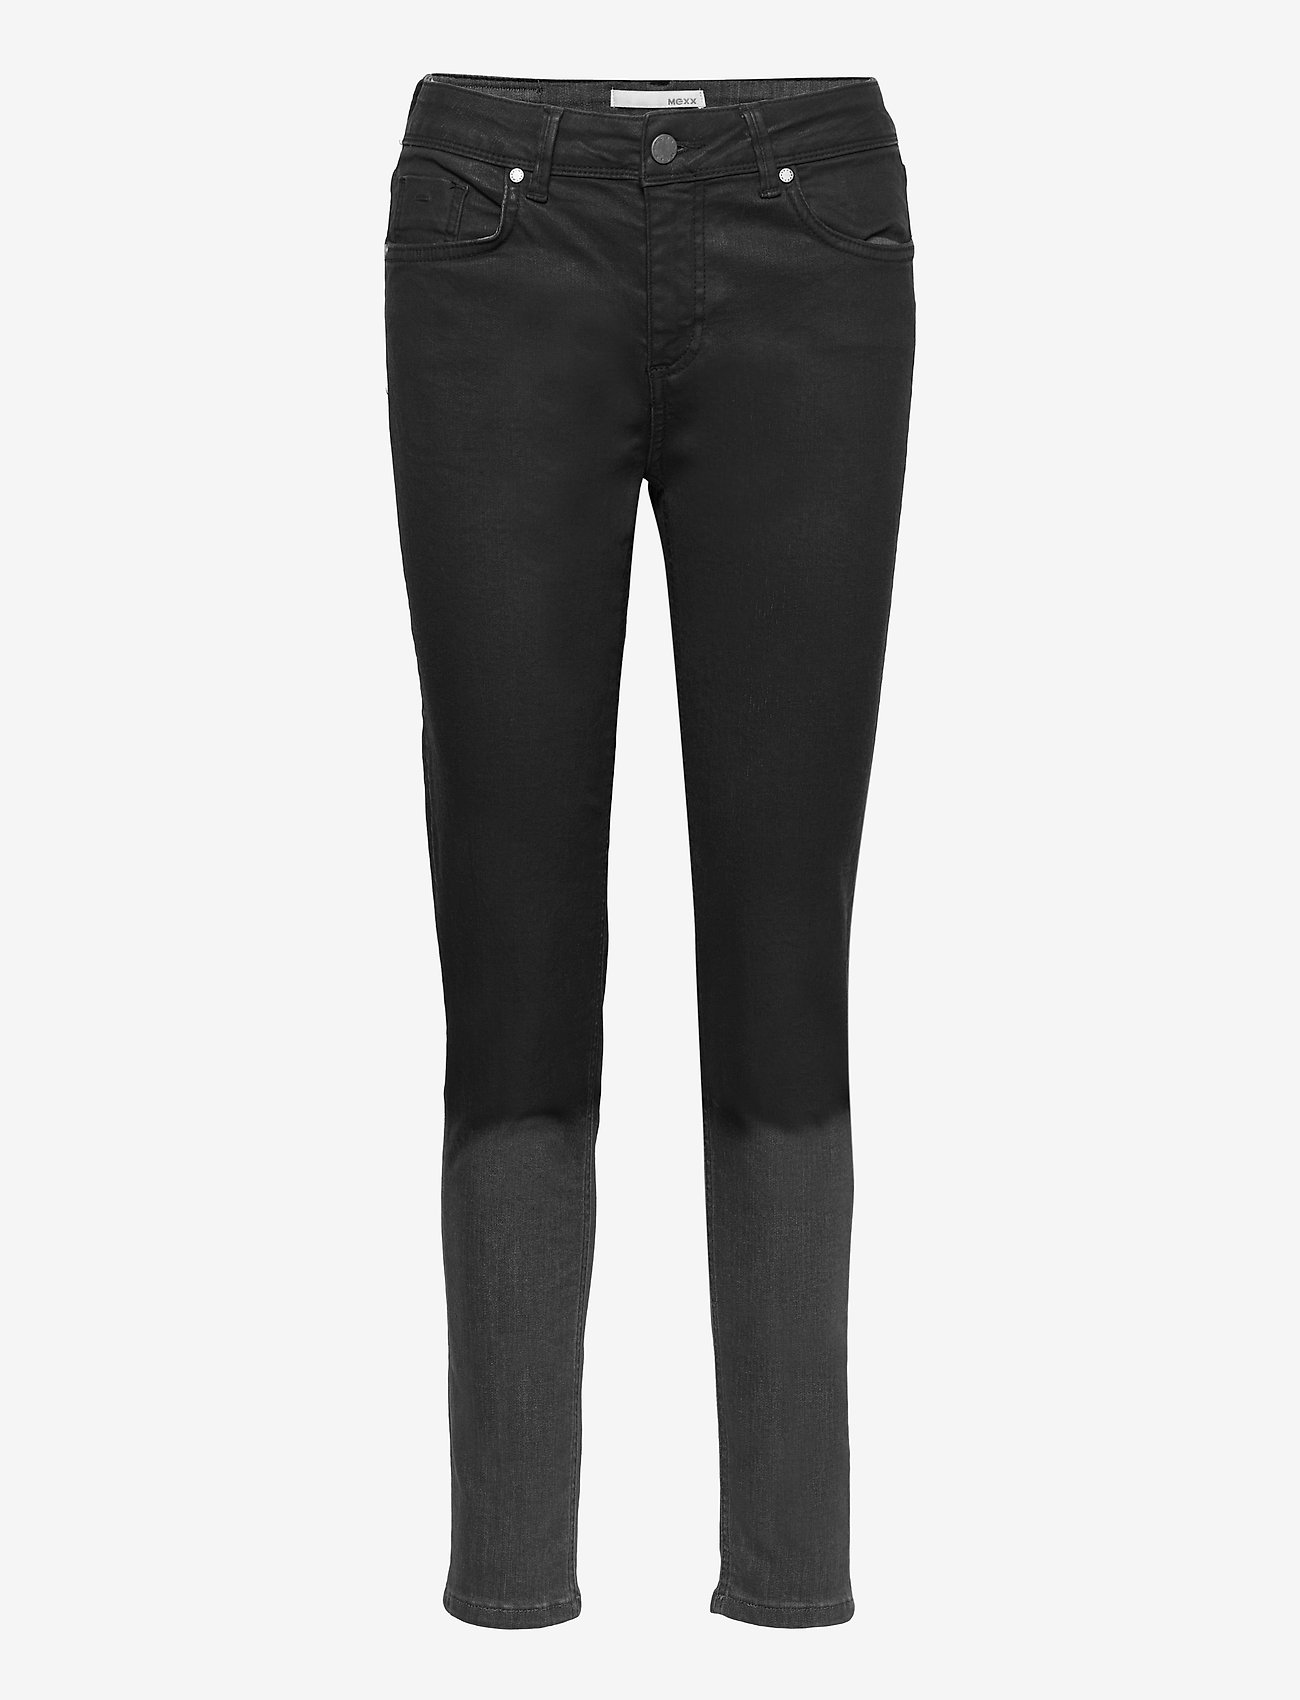 Mexx - Jeans - slim fit -farkut - black - 0